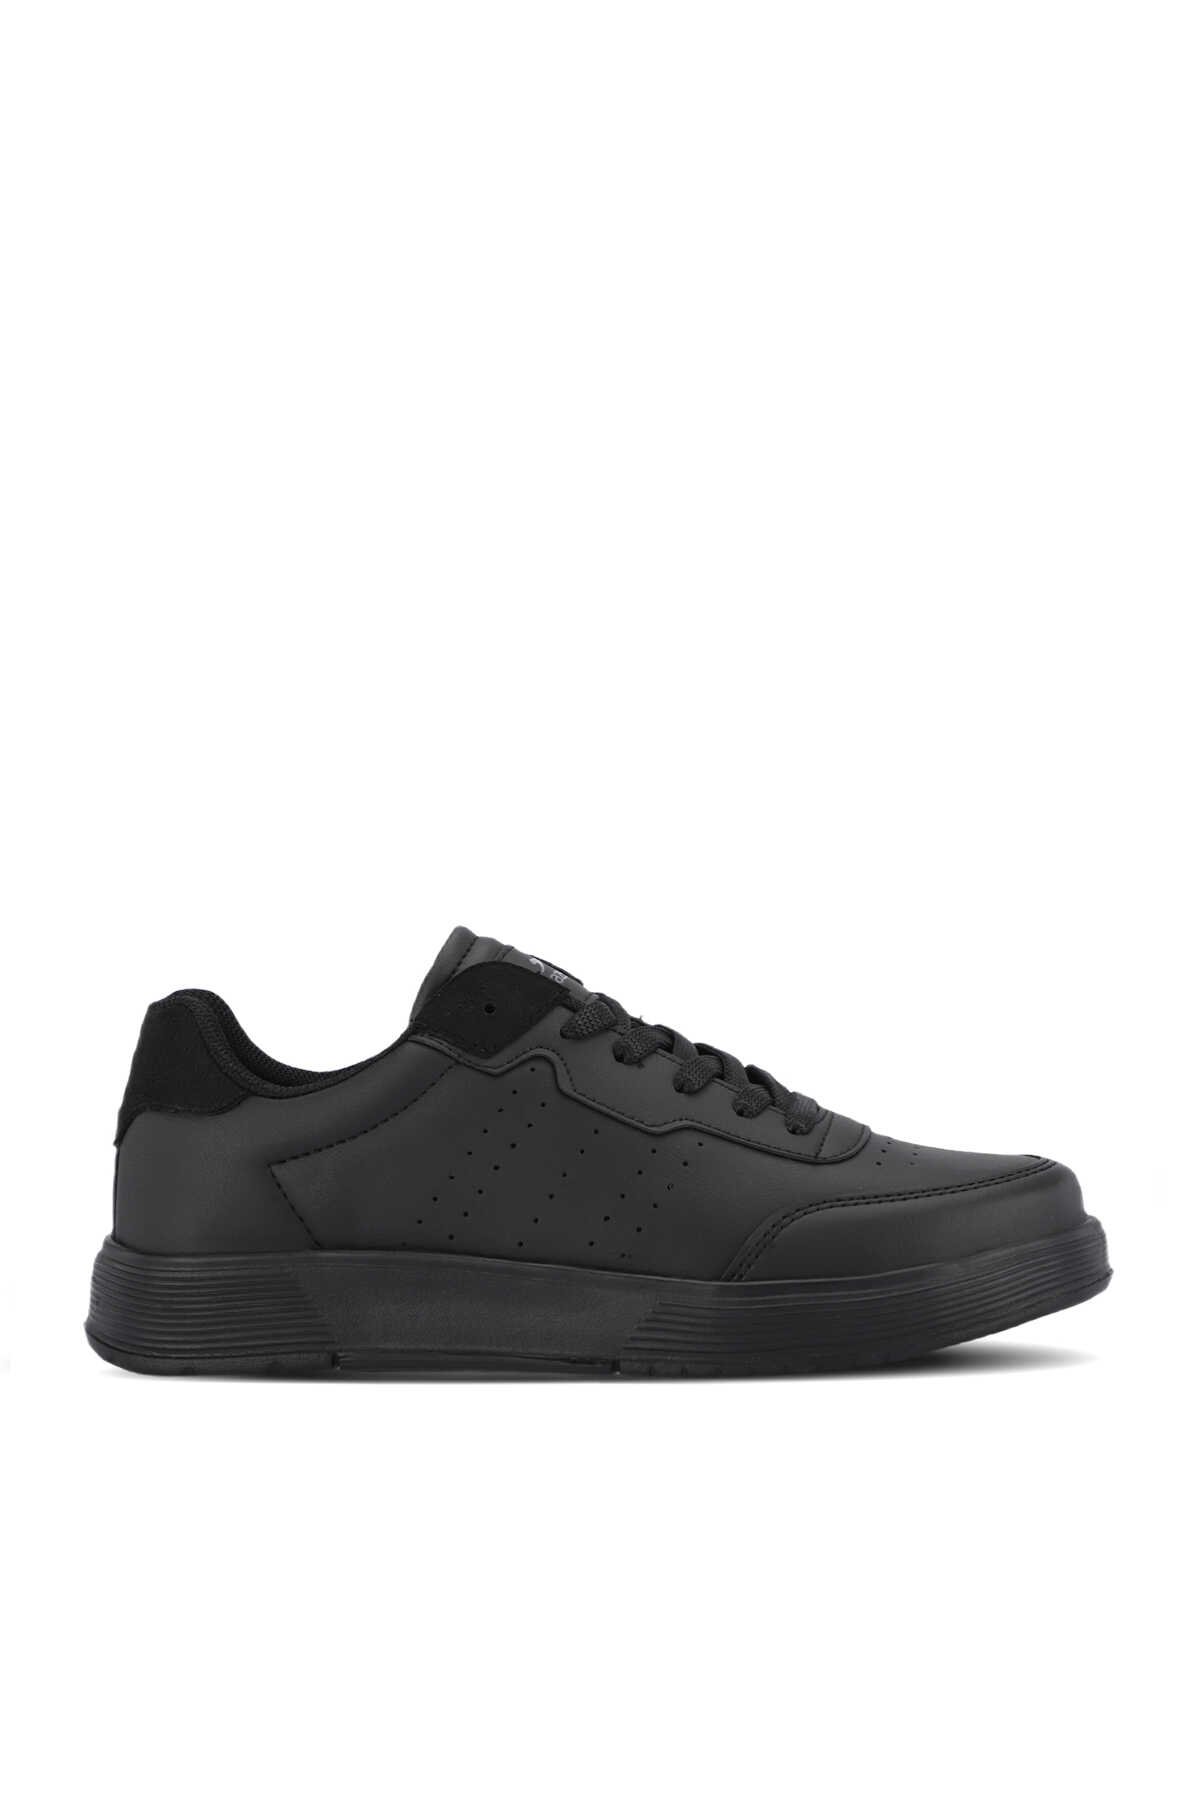 Slazenger - ZEKKO Sneaker Kadın Ayakkabı Siyah / Siyah